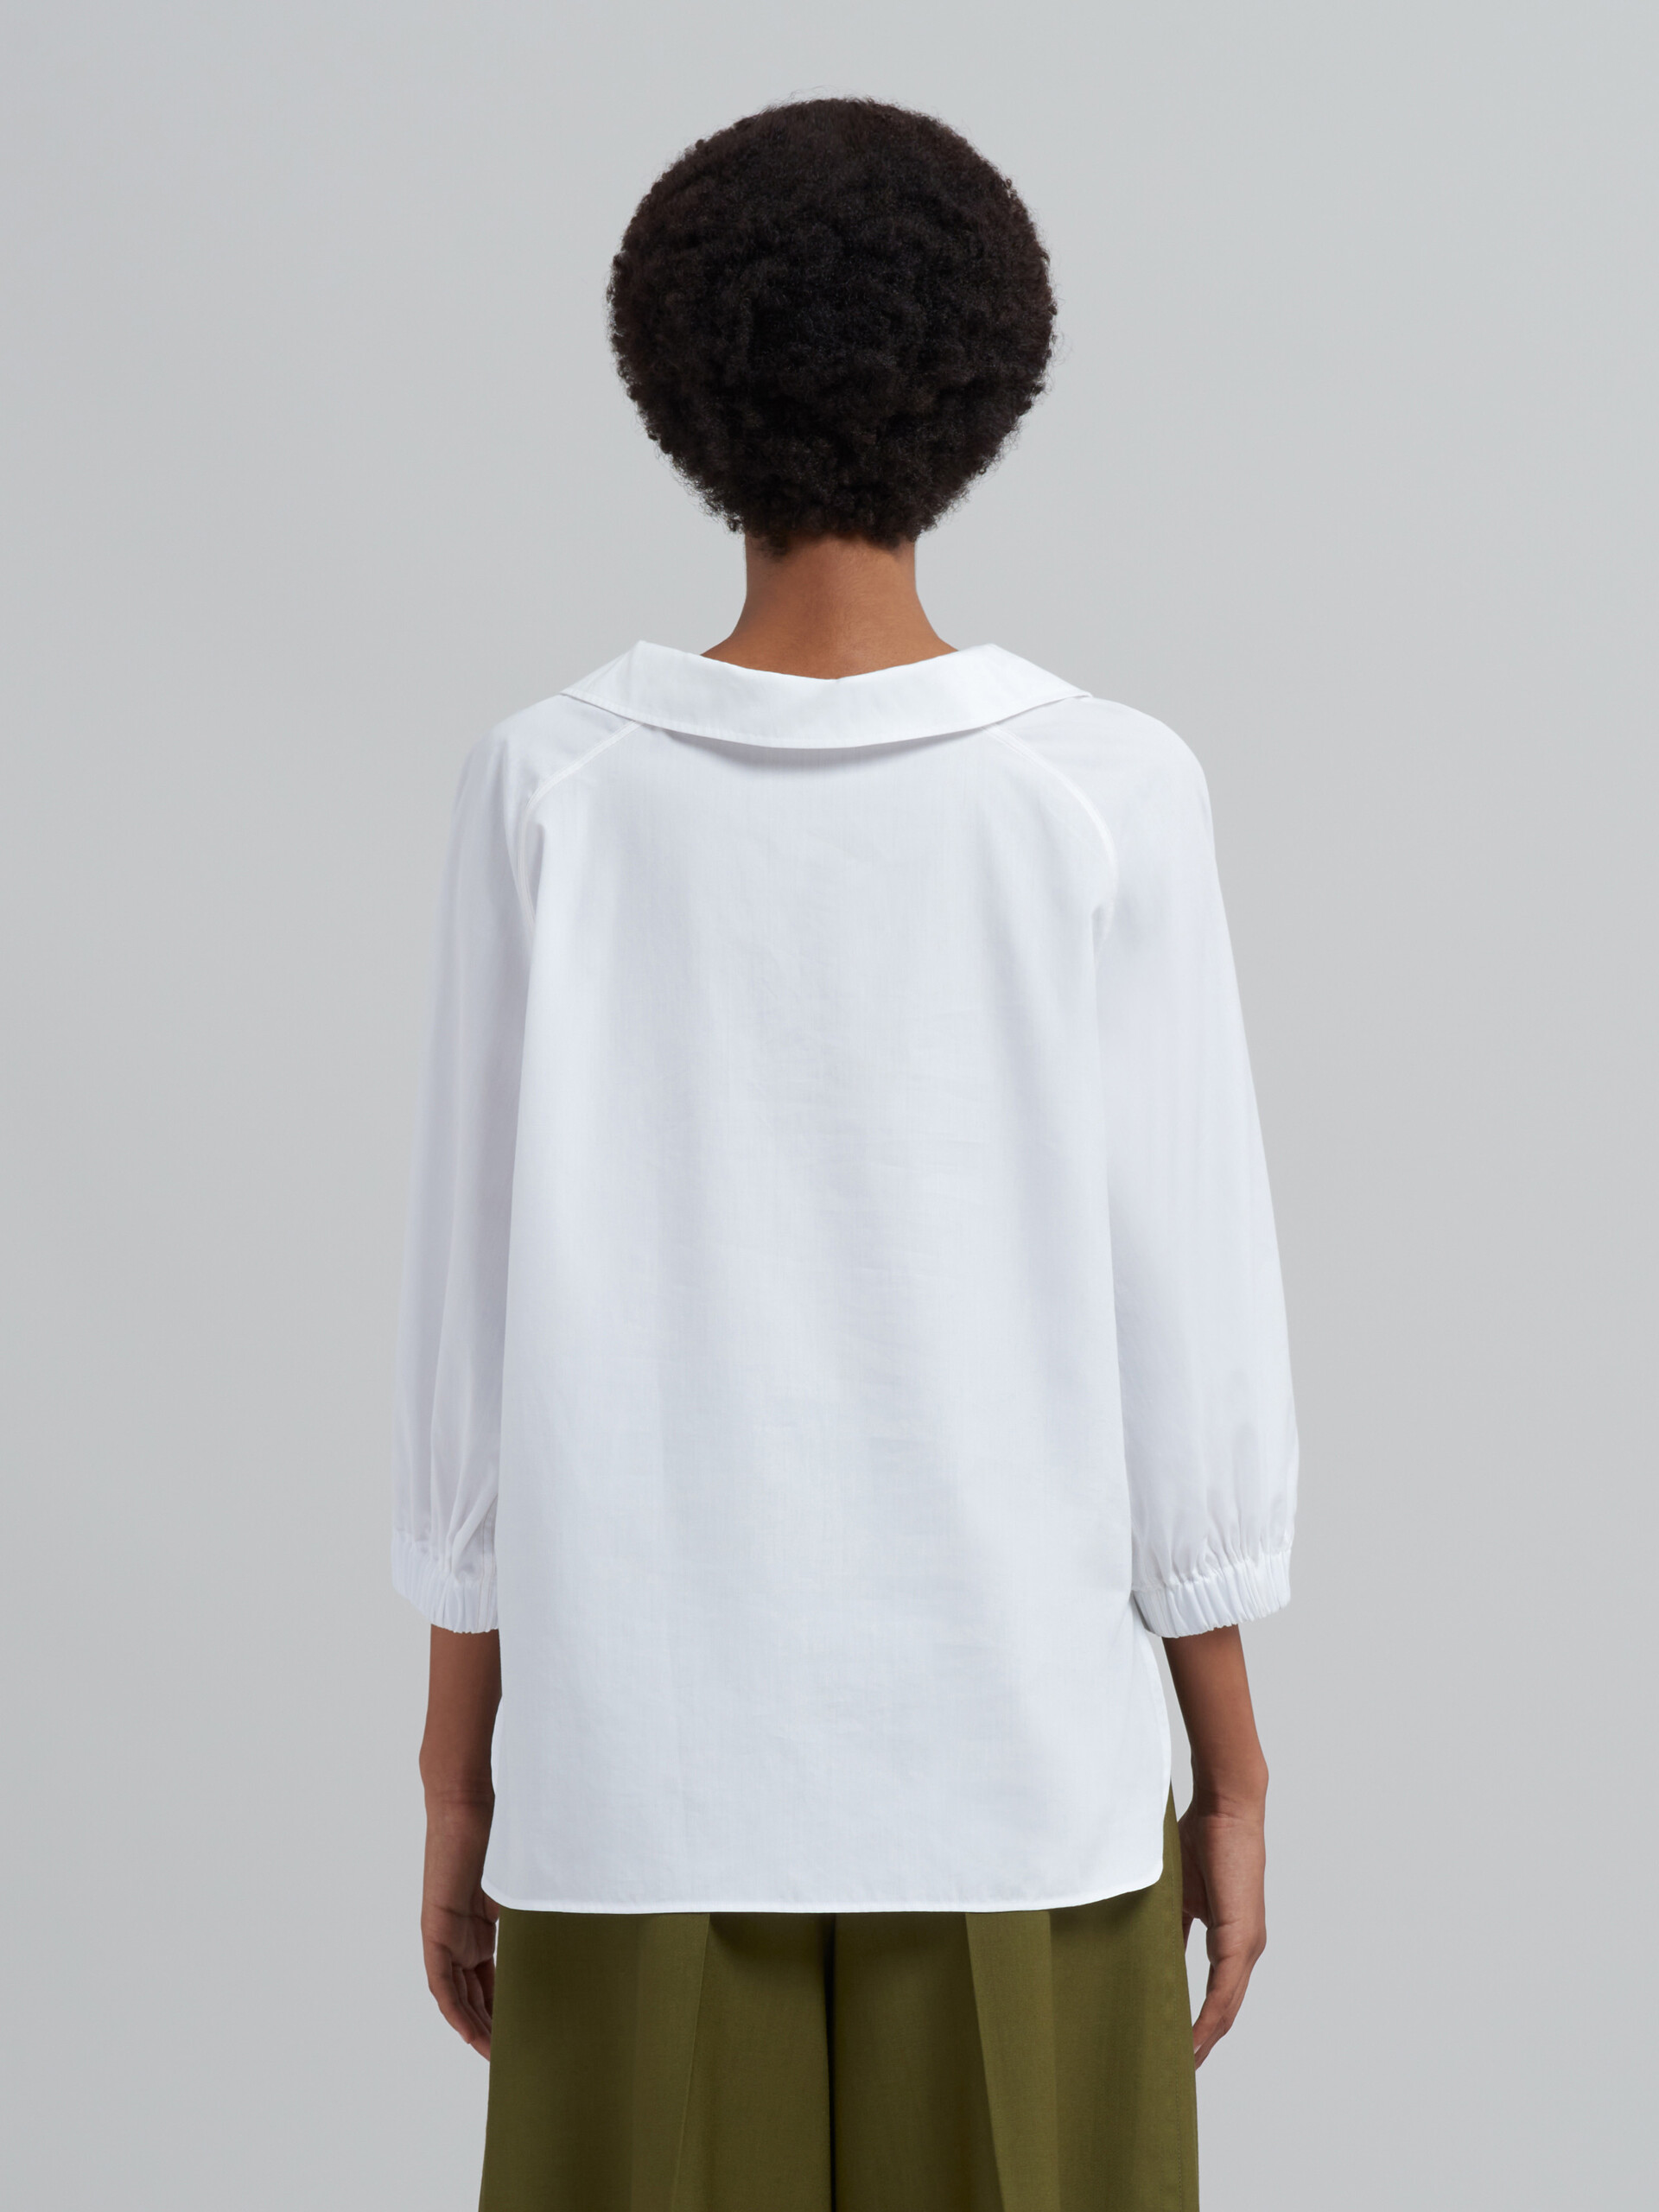 Blusa de popelina de algodón blanca - Camisas - Image 3